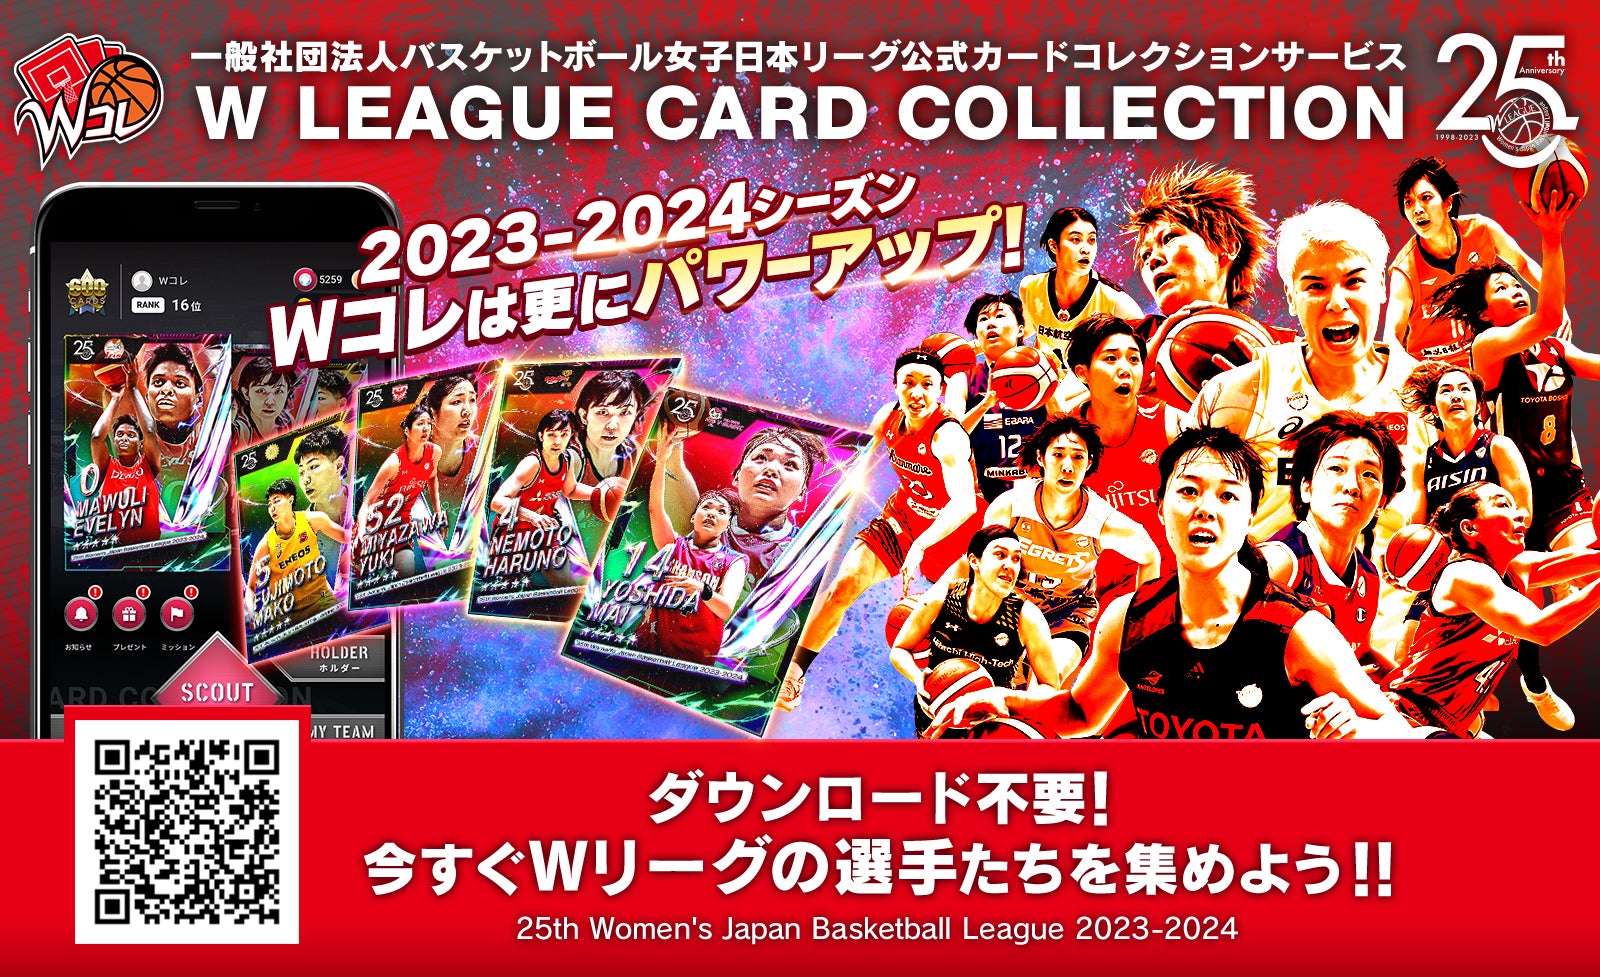 女子バスケットボール選手のデジタルカードを集めて楽しめるWリーグ公式カードコレクション「Wコレ」2023-2024シーズン版サービス開始のお知らせ